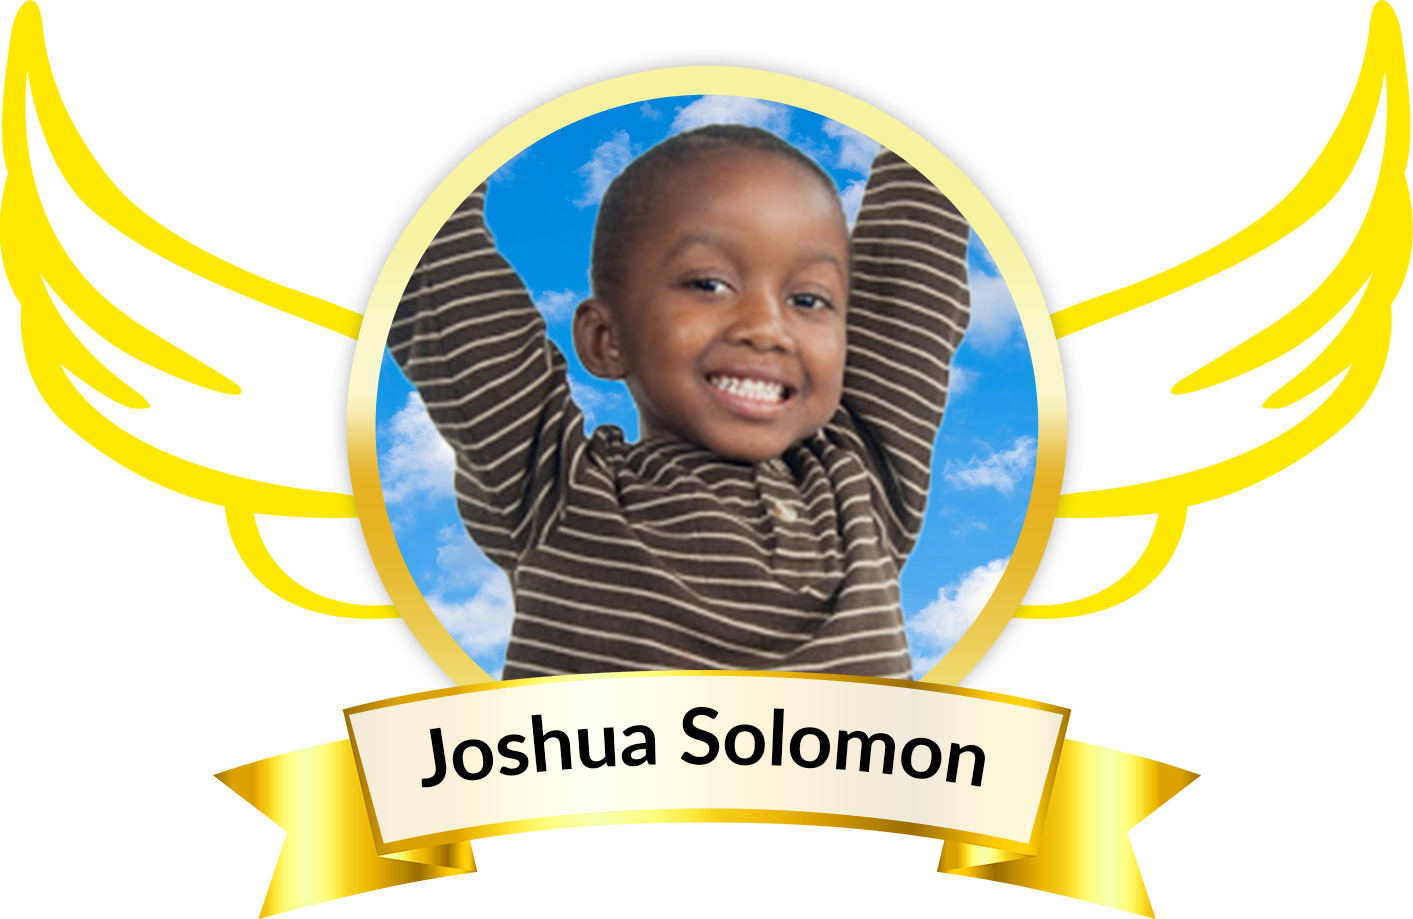 Joshua Solomon